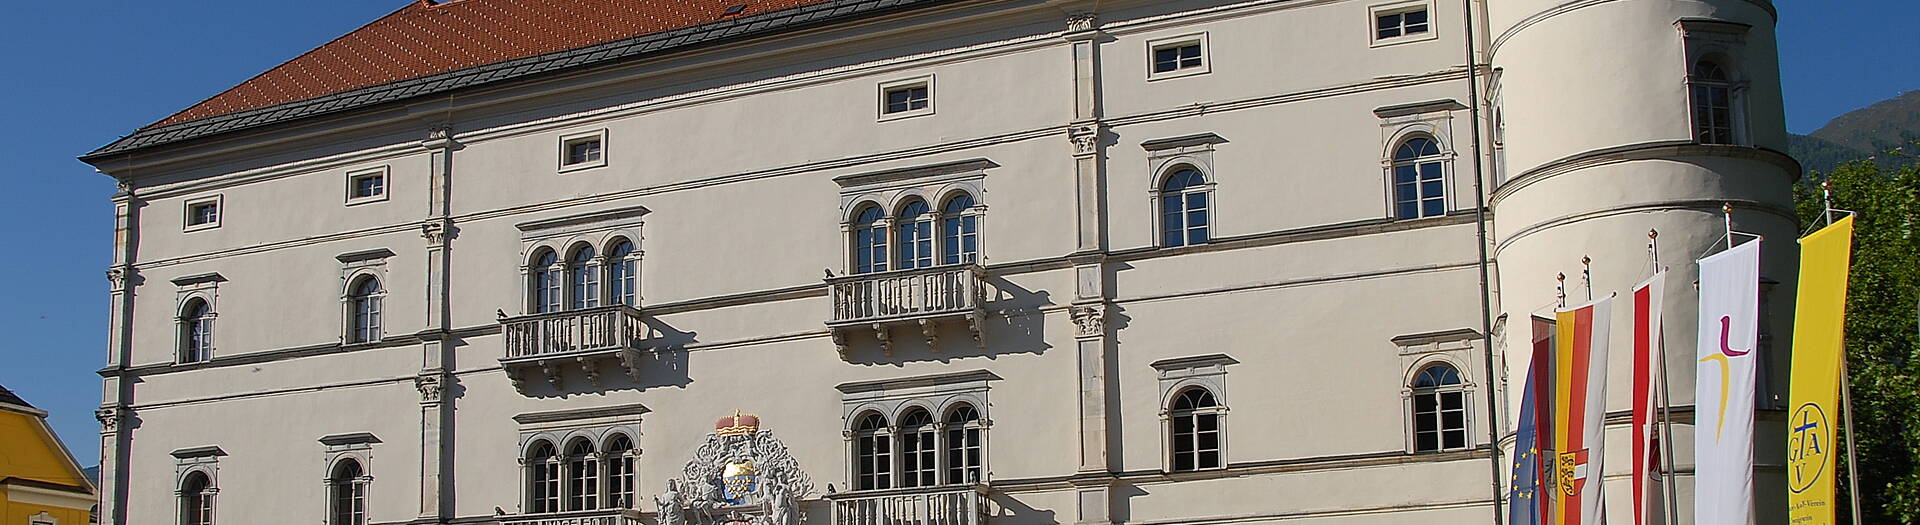 Schloss Porcia in Spittal